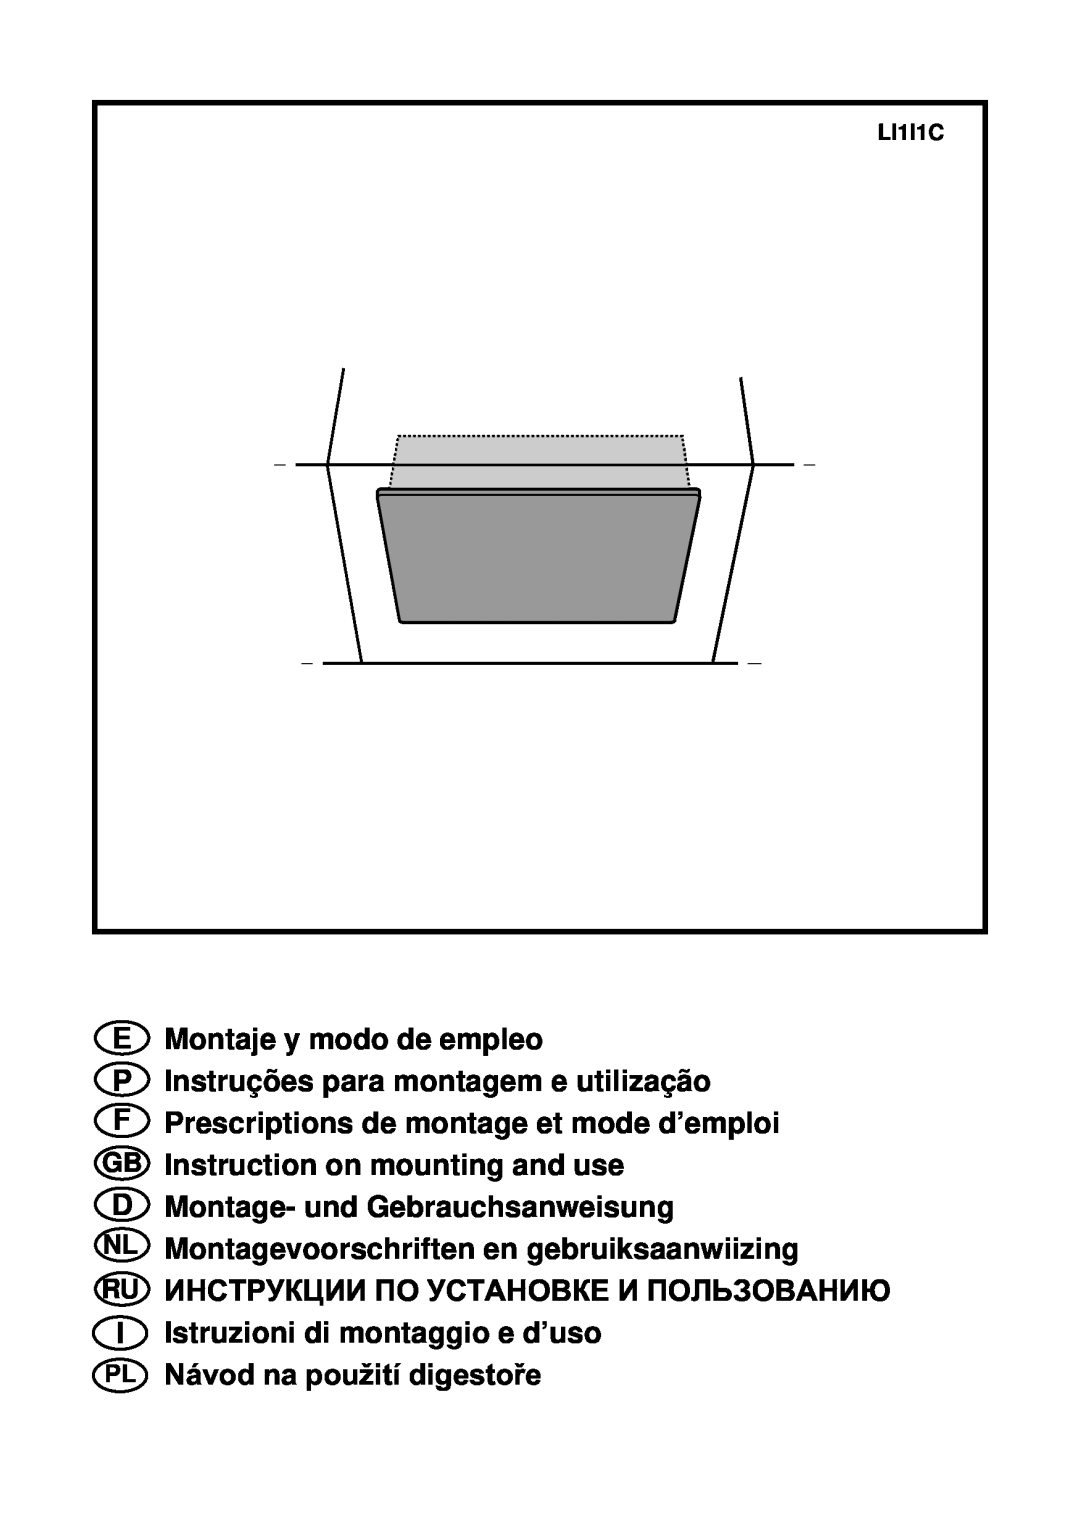 Smeg KSEG50 manual E Montaje y modo de empleo, P Instruções para montagem e utilização, D Montage- und Gebrauchsanweisung 